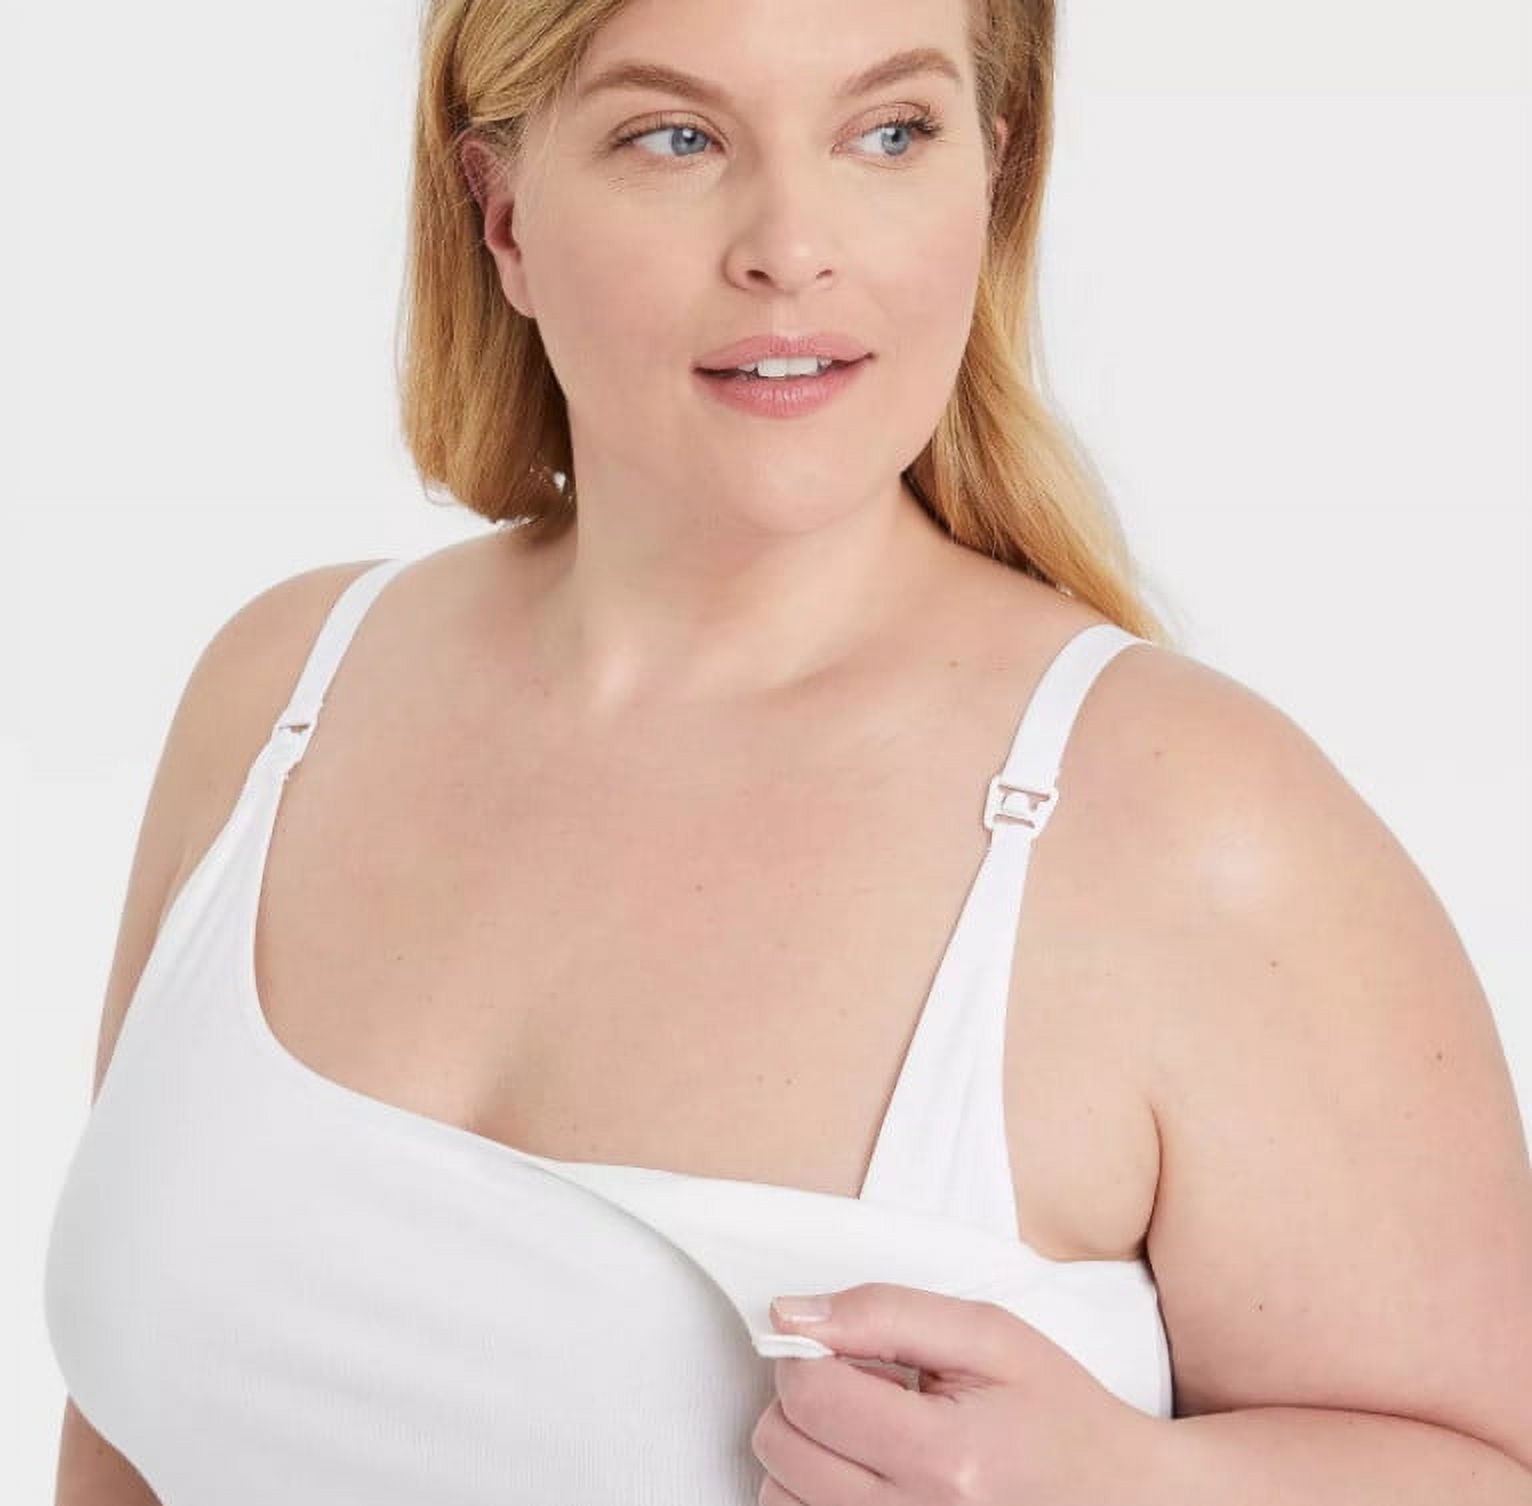 L: Gilligan & O'MALLEY nursing bra, Women's Fashion, Undergarments